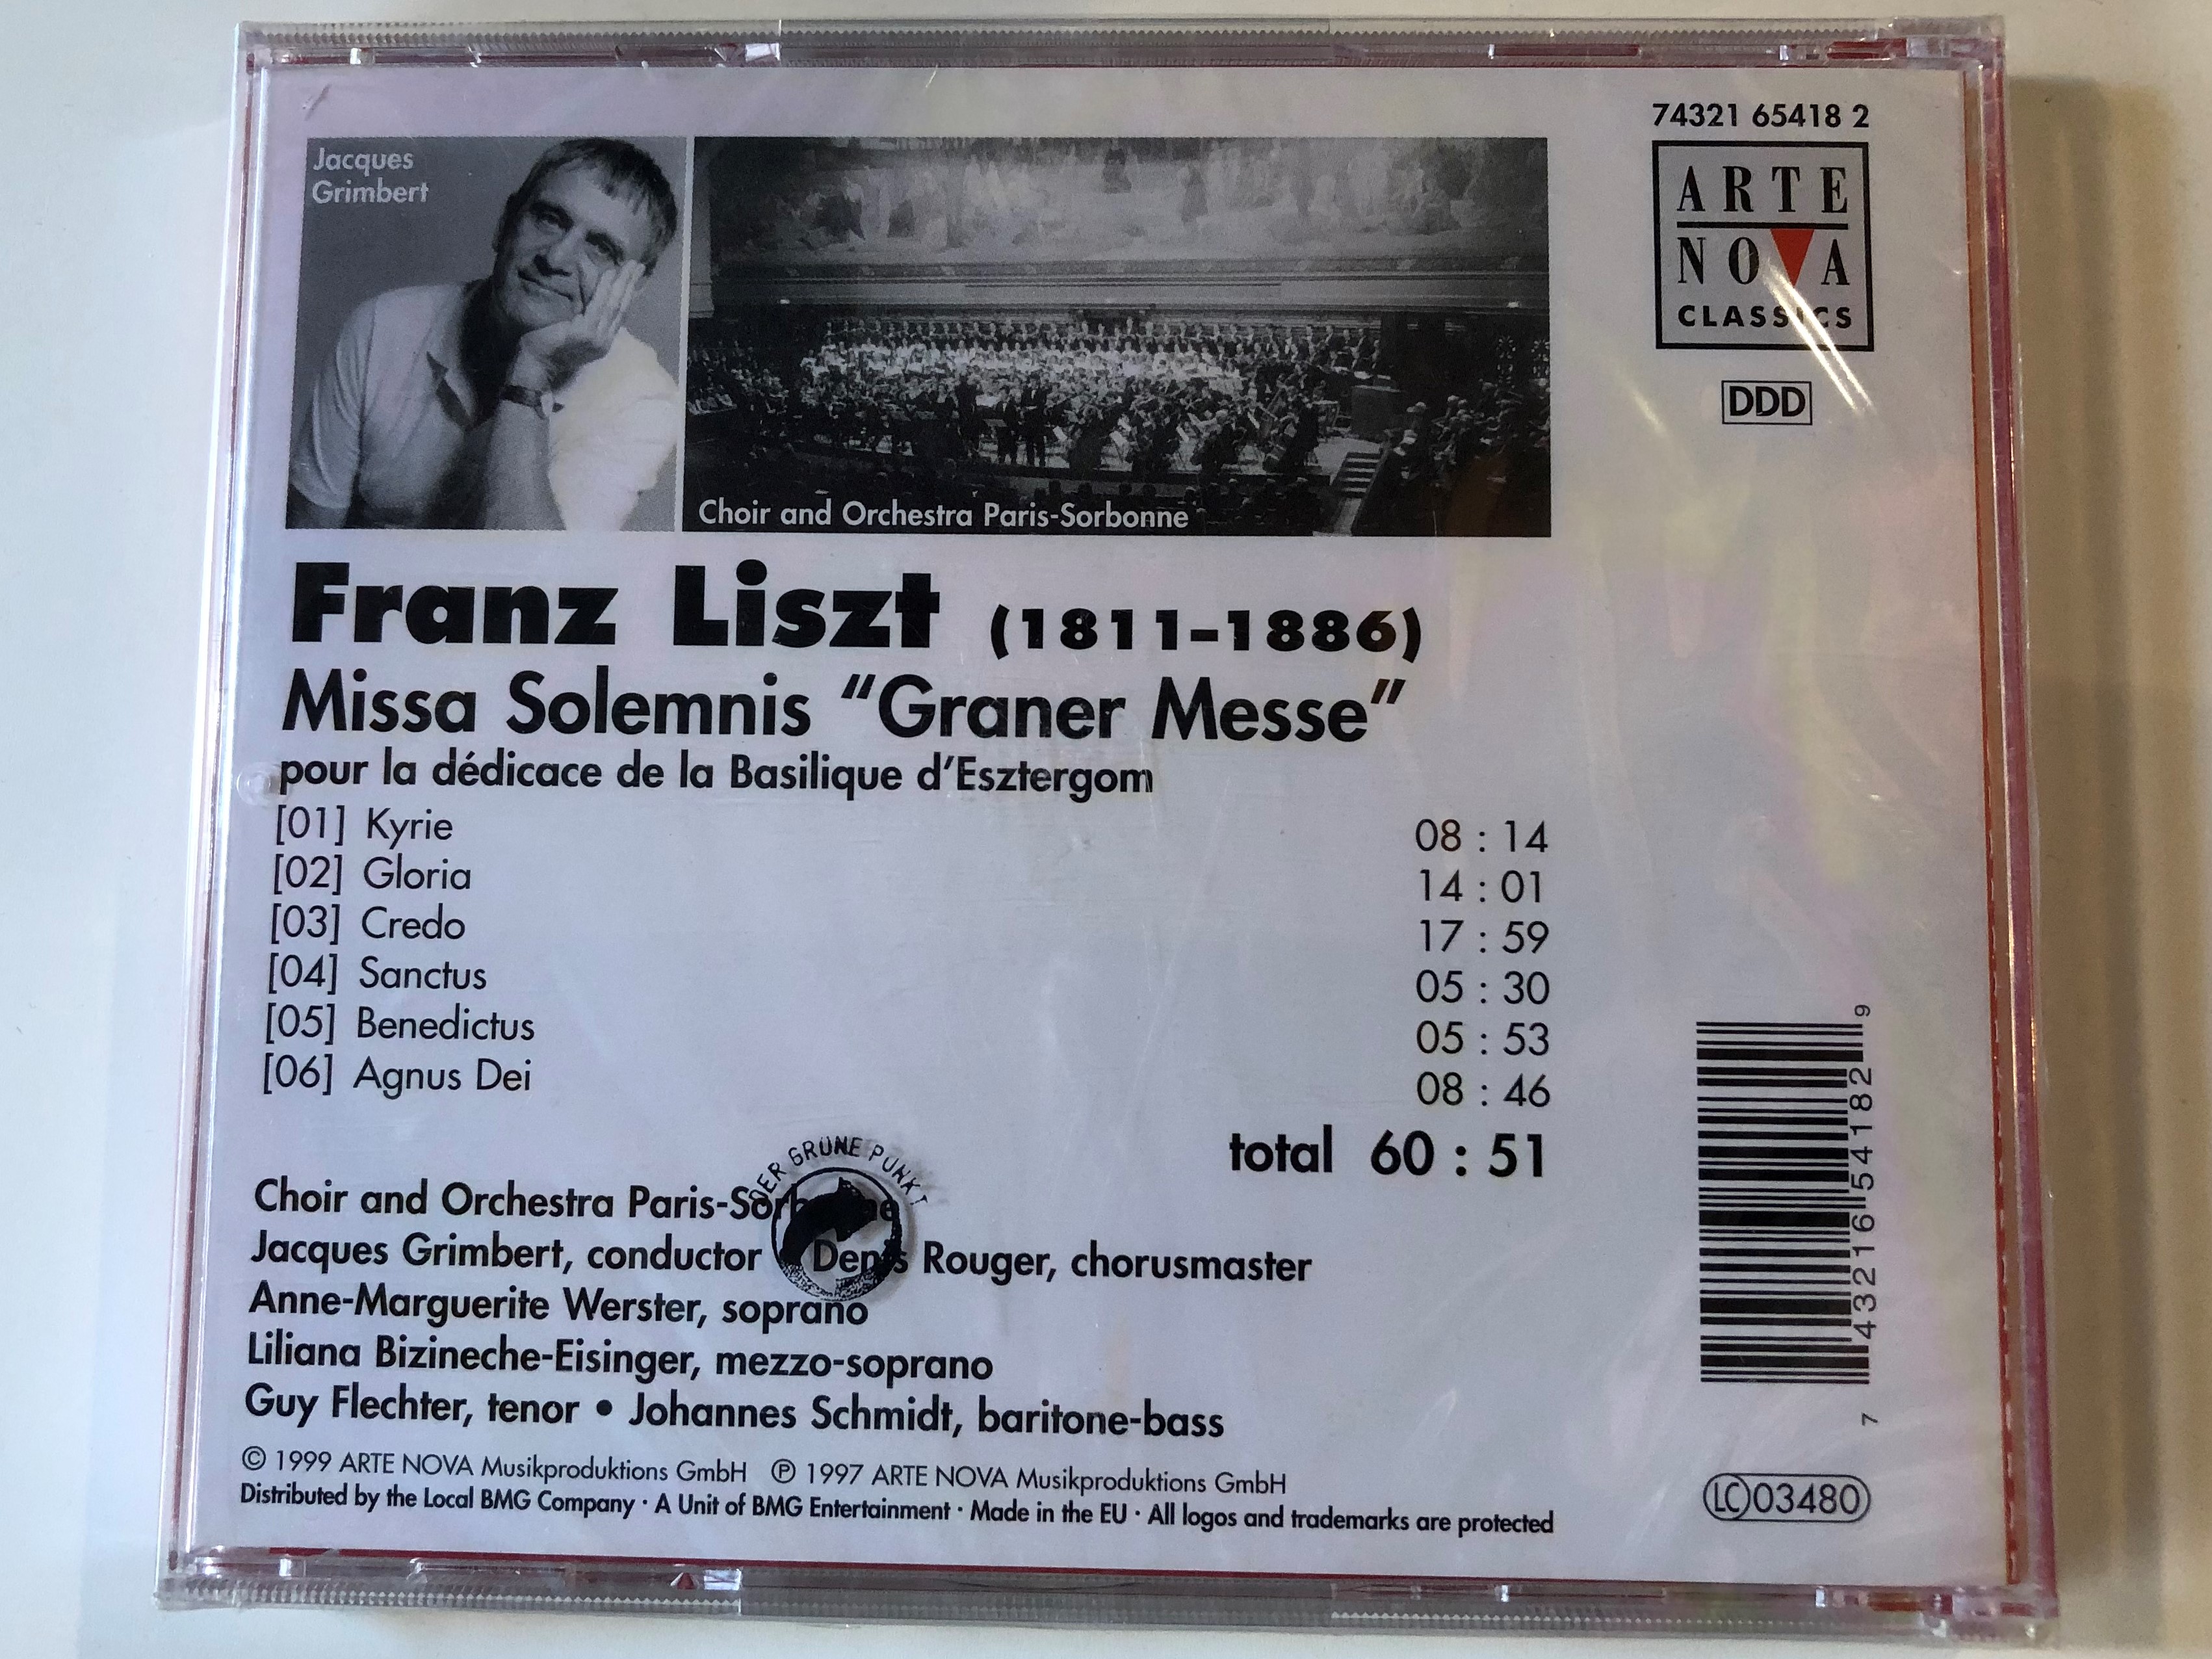 missa-solemnis-graner-messe-pour-la-d-dicace-de-la-basilique-d-esztergom-franz-liszt-choir-and-orchestra-paris-sorbonne-jacques-grimbert-arte-nova-classics-audio-cd-1999-74321-65418-2-.jpg